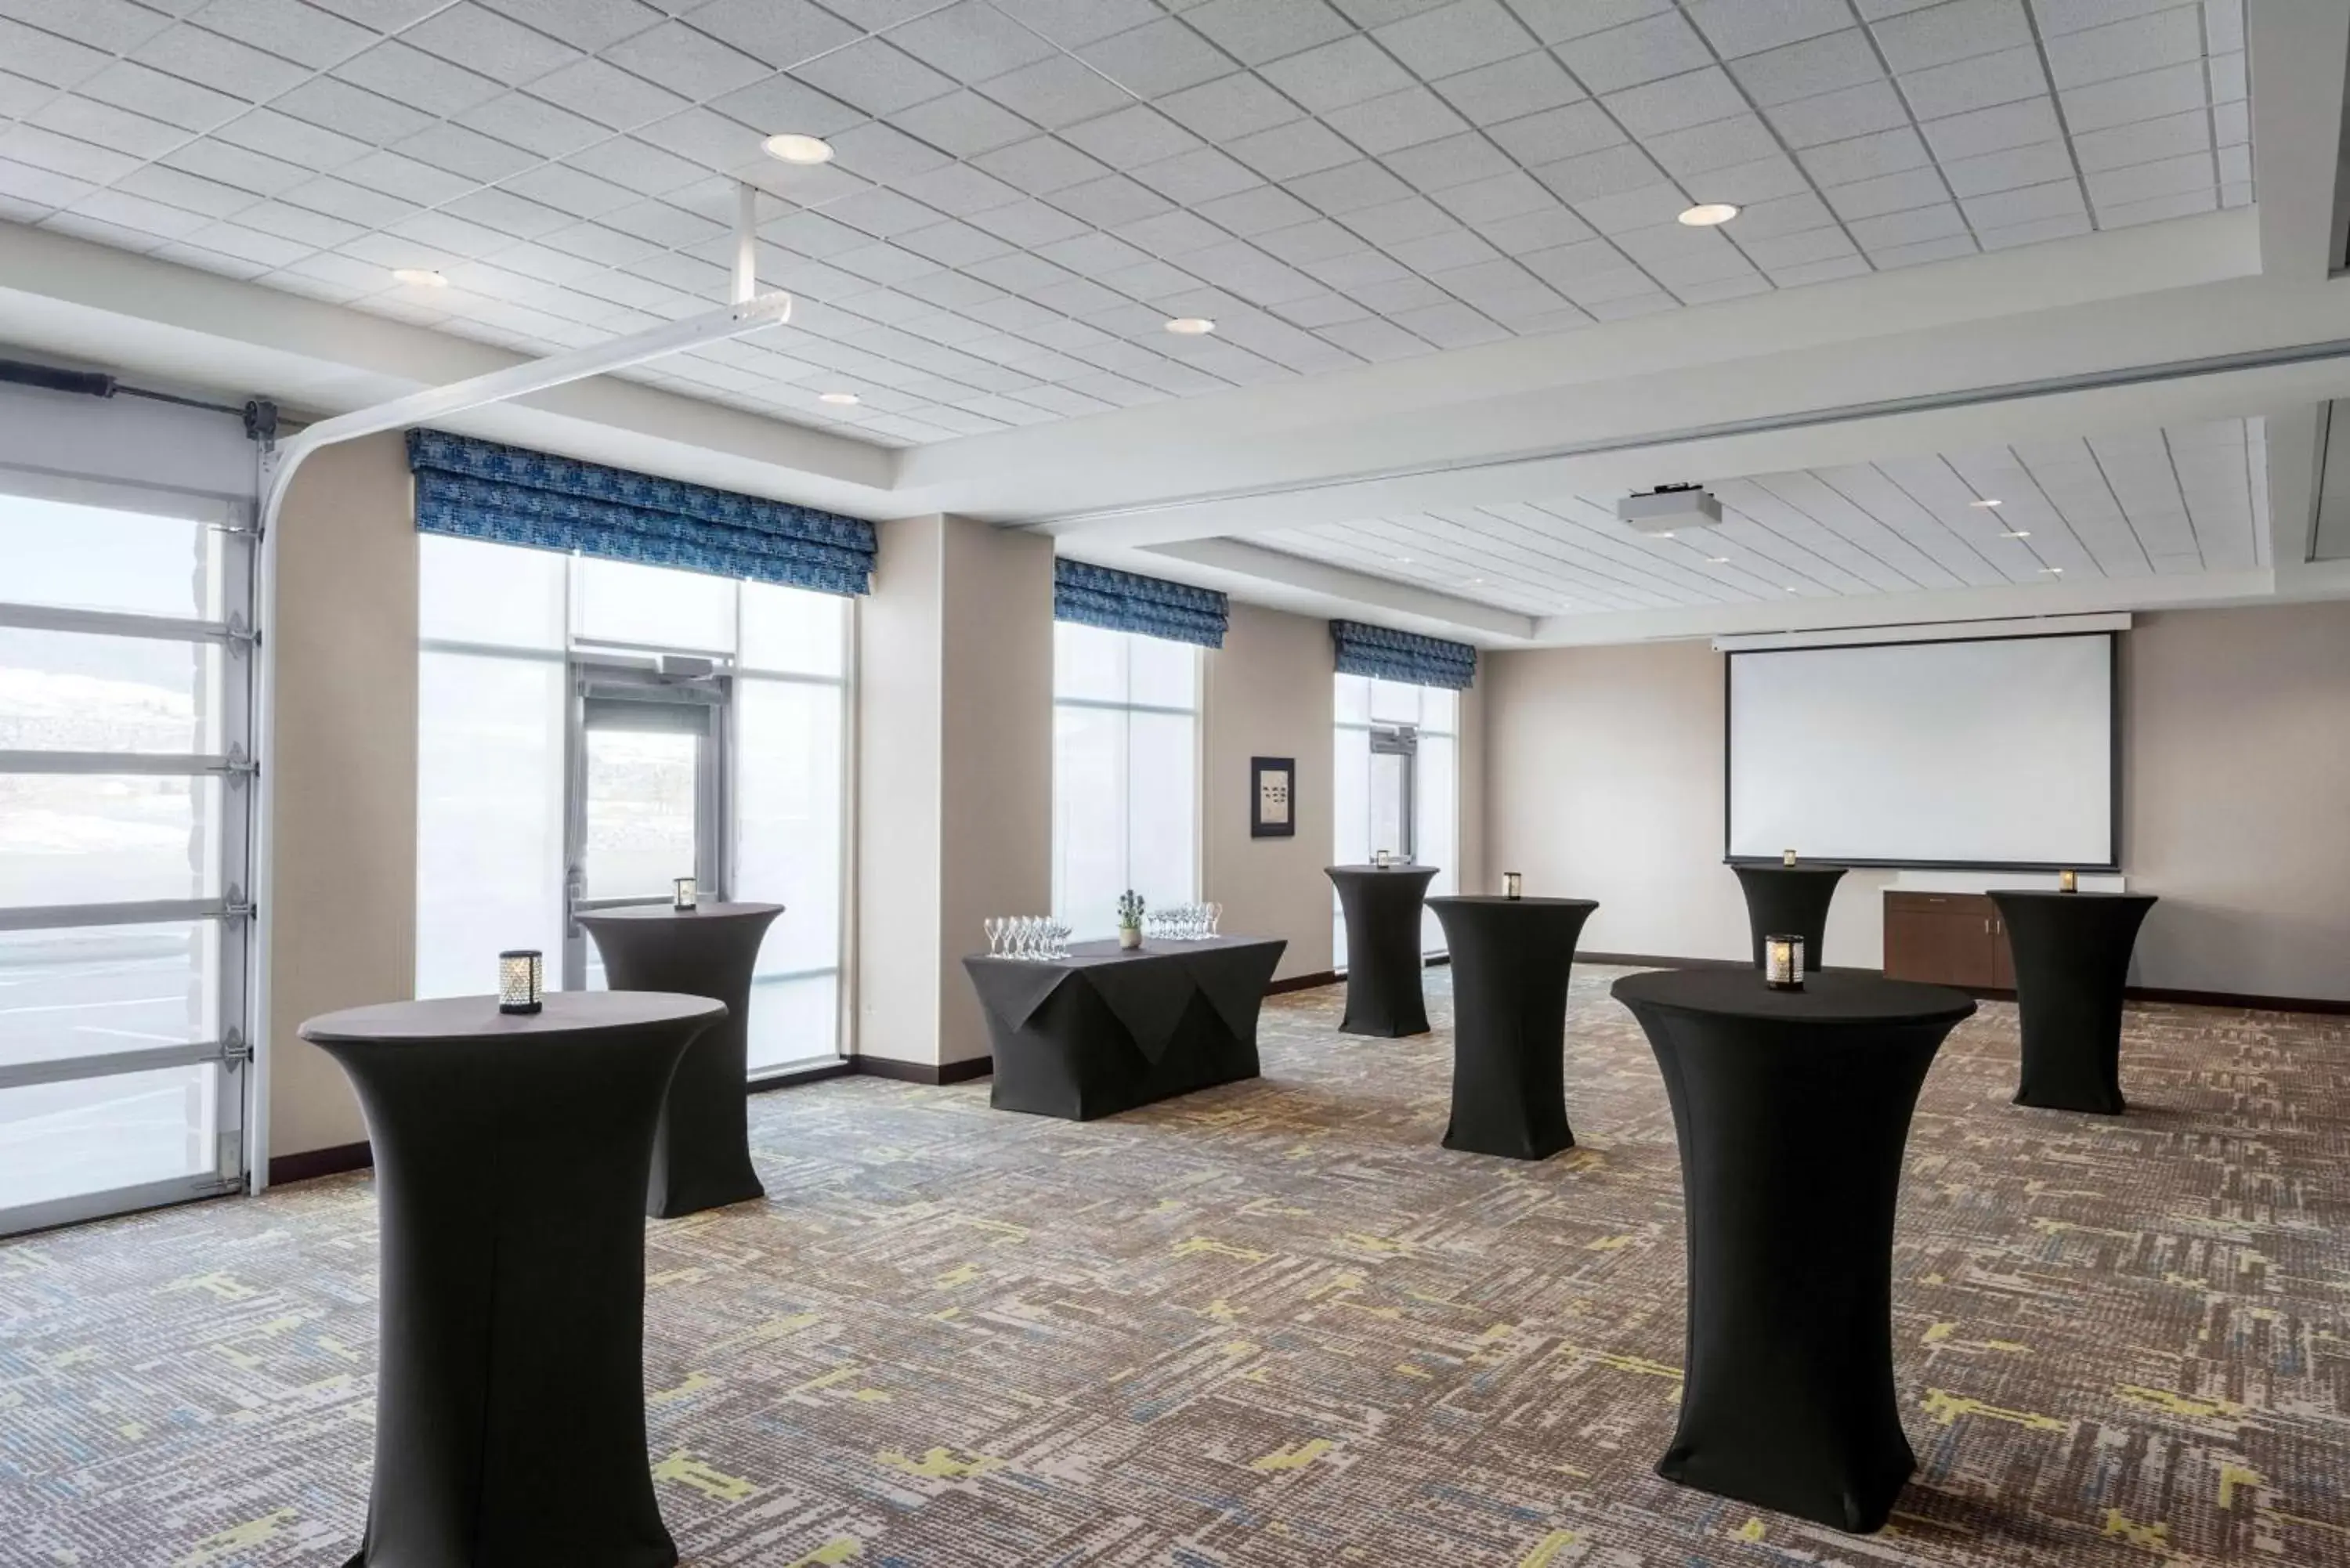 Meeting/conference room in Hampton Inn & Suites Kelowna, British Columbia, Canada